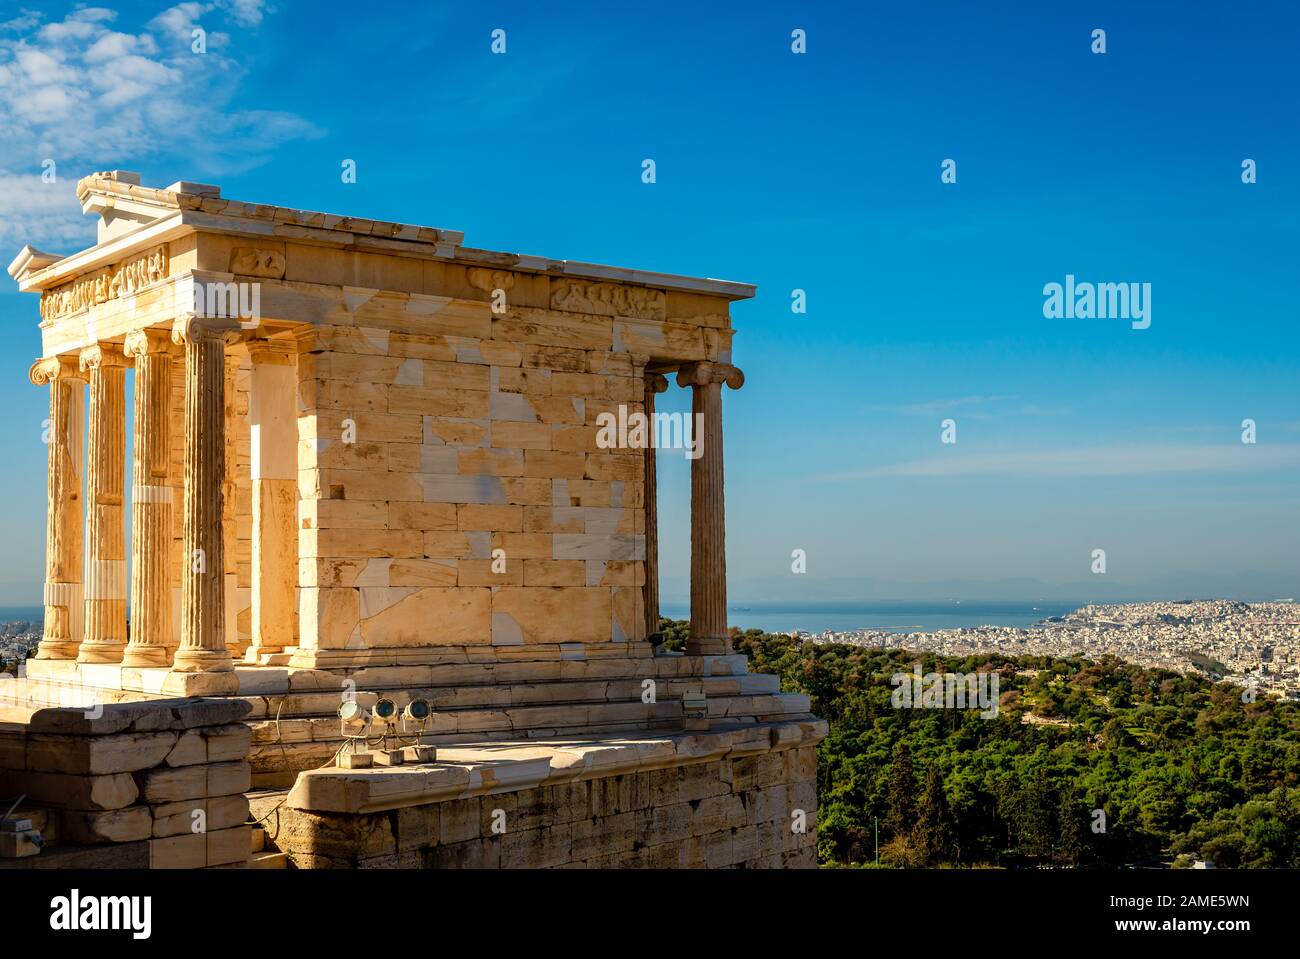 Der Tempel der Athena Nike auf der Akropolis von Athen, Griechenland, benannt nach der griechischen Göttin Athena. Philopappos Hill, Piräus und der saronische Golf ar Stockfoto